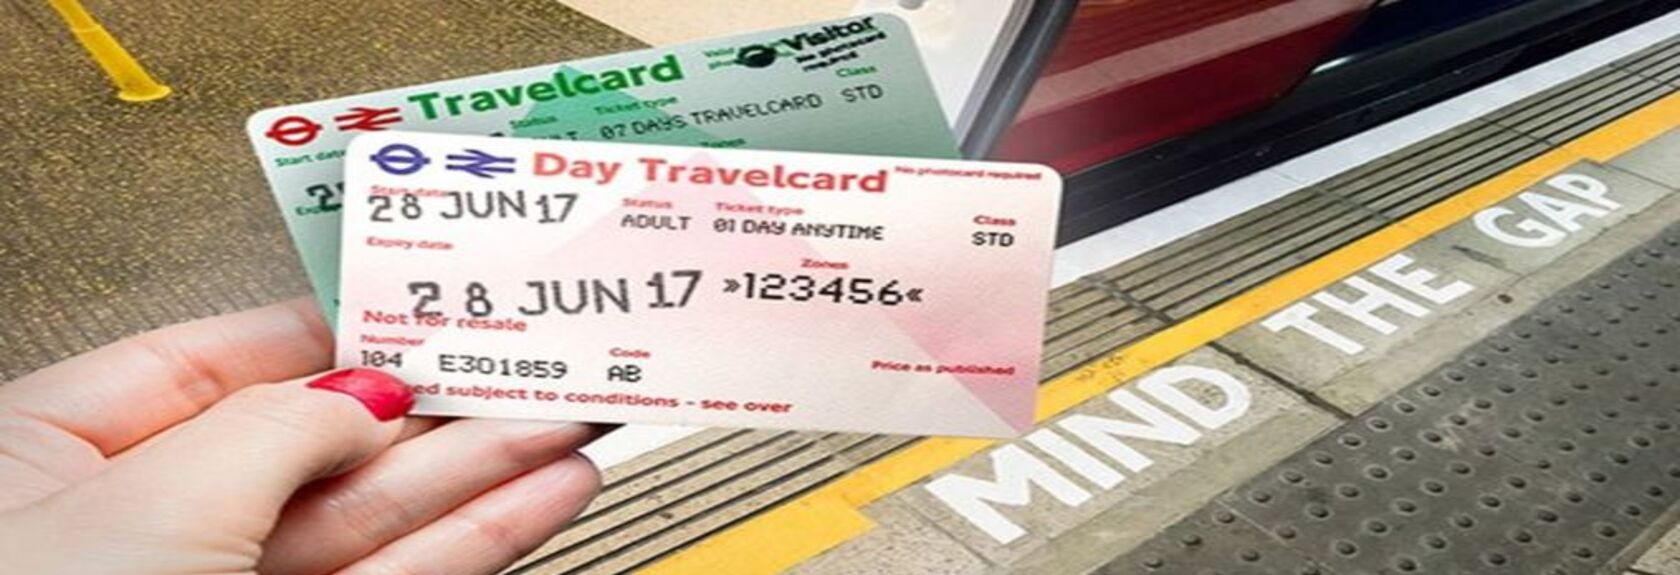 Uma alternativa ao Visitor Oyster Card é o London Travel Card, que ao contrário do Oyster Card não é feito de plástico mas de papel e é a escolha mais barata, especialmente para estadias mais curtas em Londres